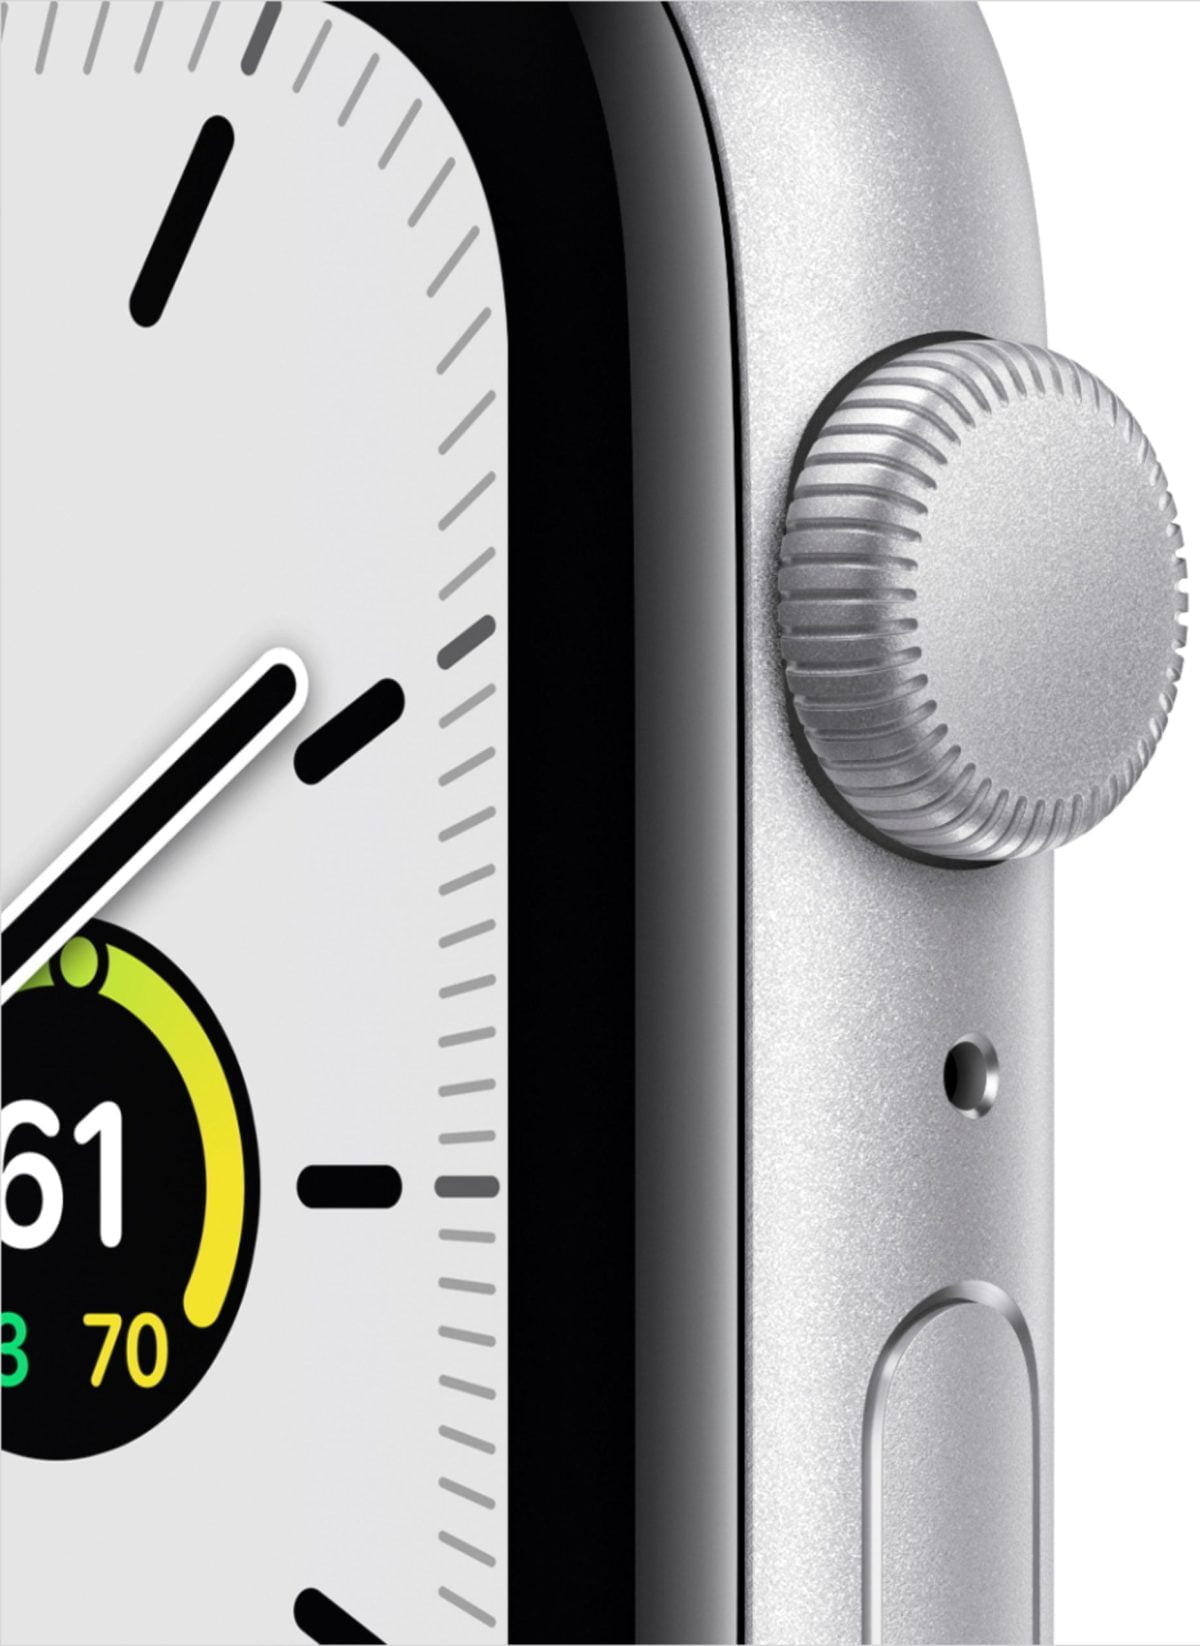 6215919Cv11D Scaled ابل &Lt;H1&Gt;Apple Watch Se (Gps) 44Mm هيكل من الألمنيوم الفضي مع حزام رياضي أبيض - فضي&Lt;/H1&Gt;
&Lt;Div Class=&Quot;Product-Description&Quot;&Gt;تتمتع Apple Watch Se بنفس حجم شاشة Retina الأكبر حجماً مثل Series 6 ، لذا يمكنك رؤية المزيد بلمحة. مستشعرات متقدمة لتتبع جميع أهدافك المتعلقة باللياقة والتمرين. وميزات قوية للحفاظ على صحتك وأمانك. يتيح لك تطبيق Sleep تحديد روتين ما قبل النوم وتتبع نومك. وستتلقى أيضًا المكالمات والرسائل والموسيقى مباشرة على معصمك. إنه يشاهد كثيرًا مقابل أقل بكثير مما كنت تتوقعه.&Lt;/Div&Gt; أبل ووتش سي Apple Watch Se (Gps) 44Mm هيكل من الألمنيوم الفضي مع حزام رياضي أبيض - فضي